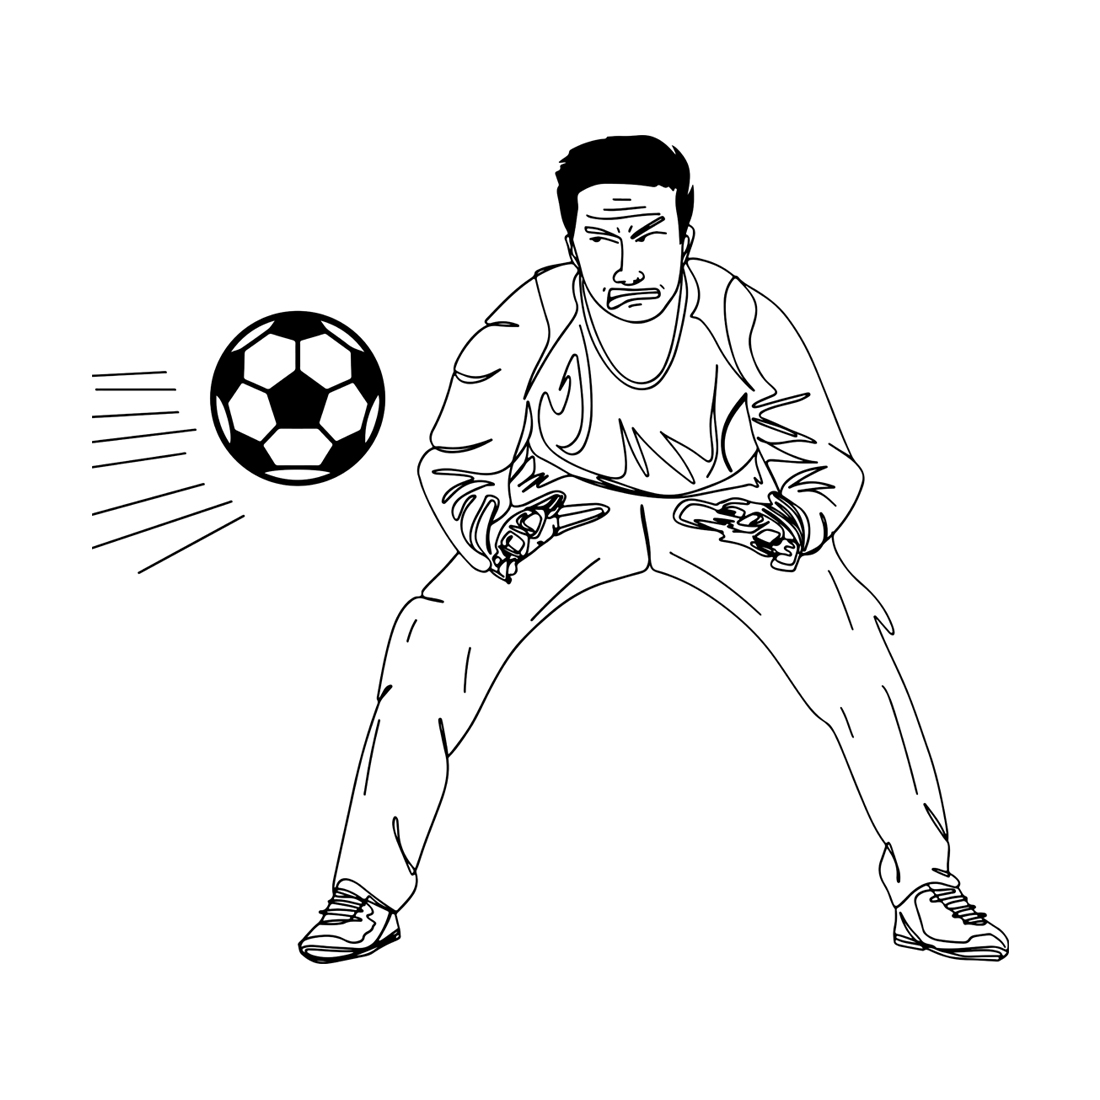 Save the Game: Line Art of Soccer Goalkeeper, Goalkeeper’s Pride: Vector Art of Soccer Save, Diving Defender: Line Art Sketch of Goalkeeper preview image.